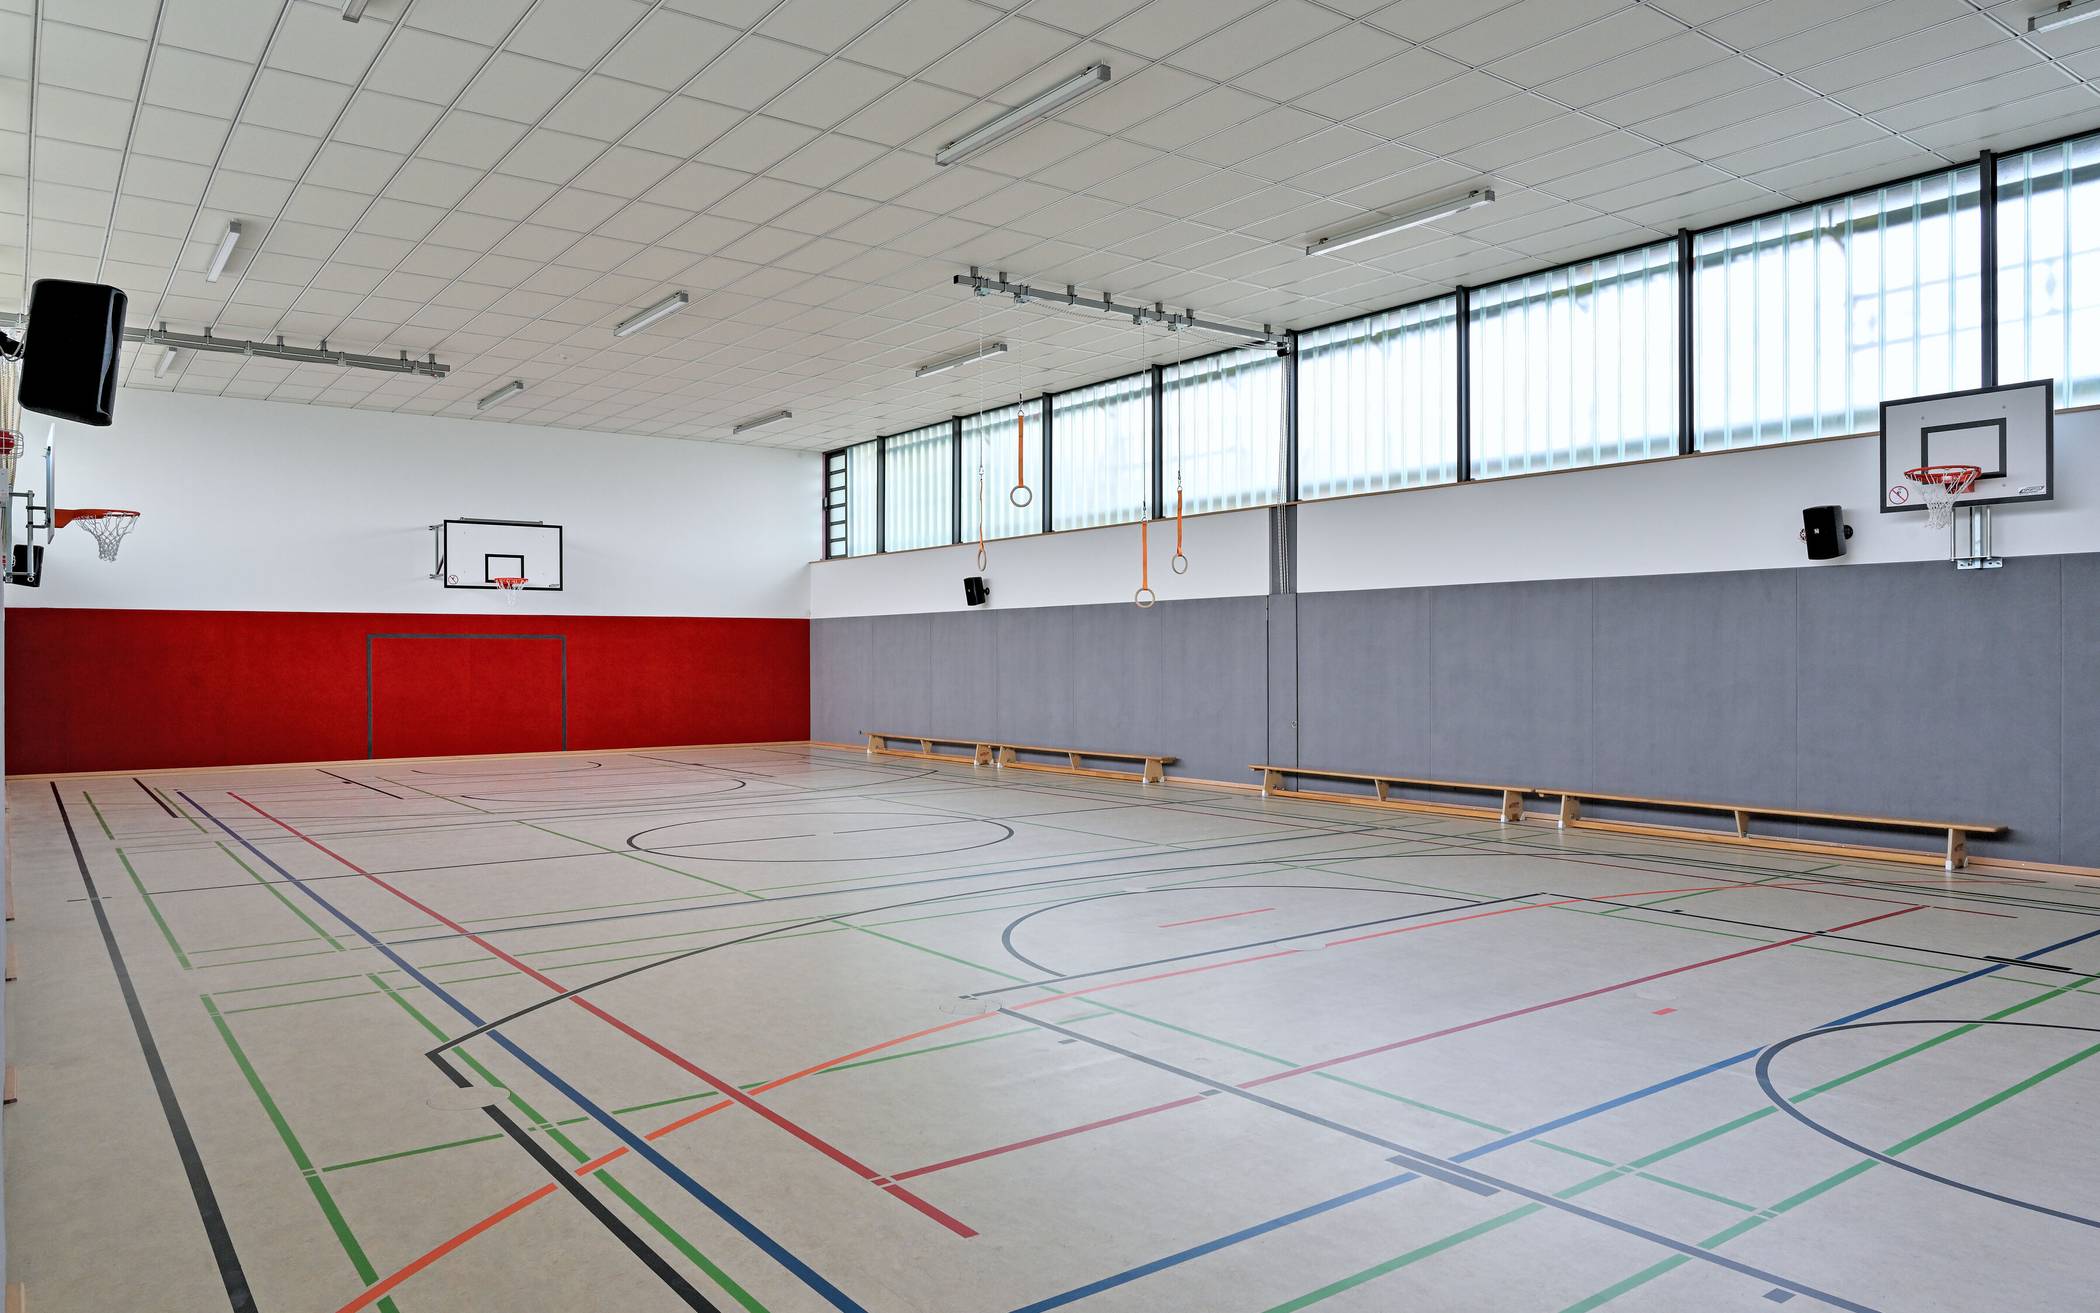  Die Schule und die Vereine können die neue Turnhalle ab sofort nutzen.  